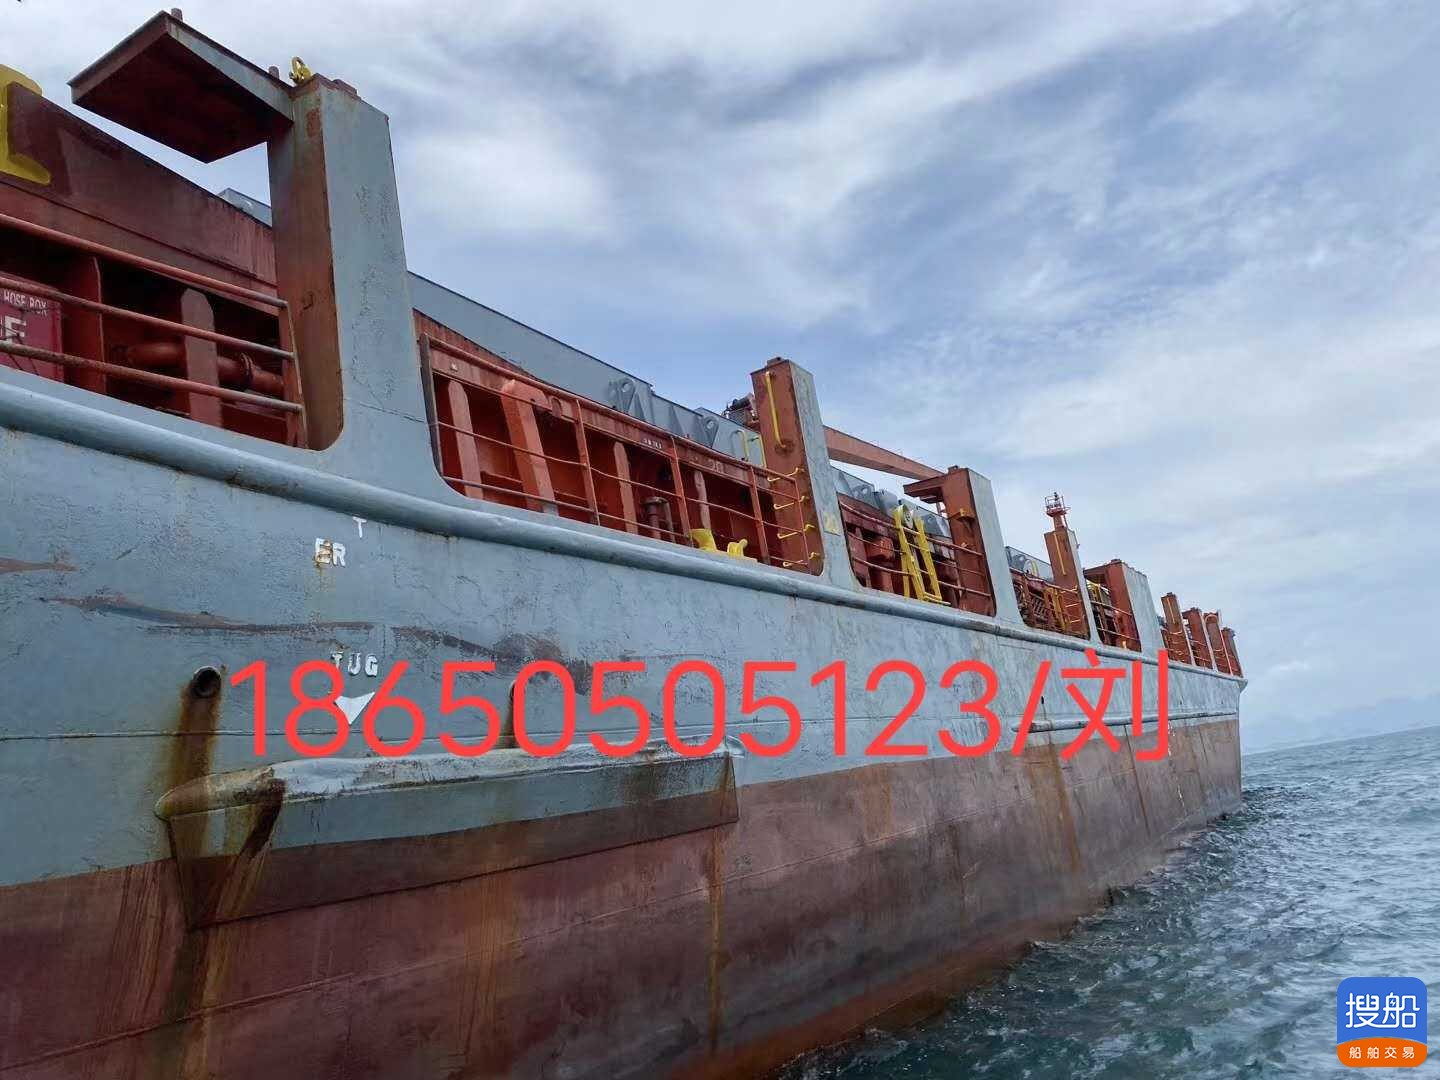 出售2000年造外籍5500吨集装箱船